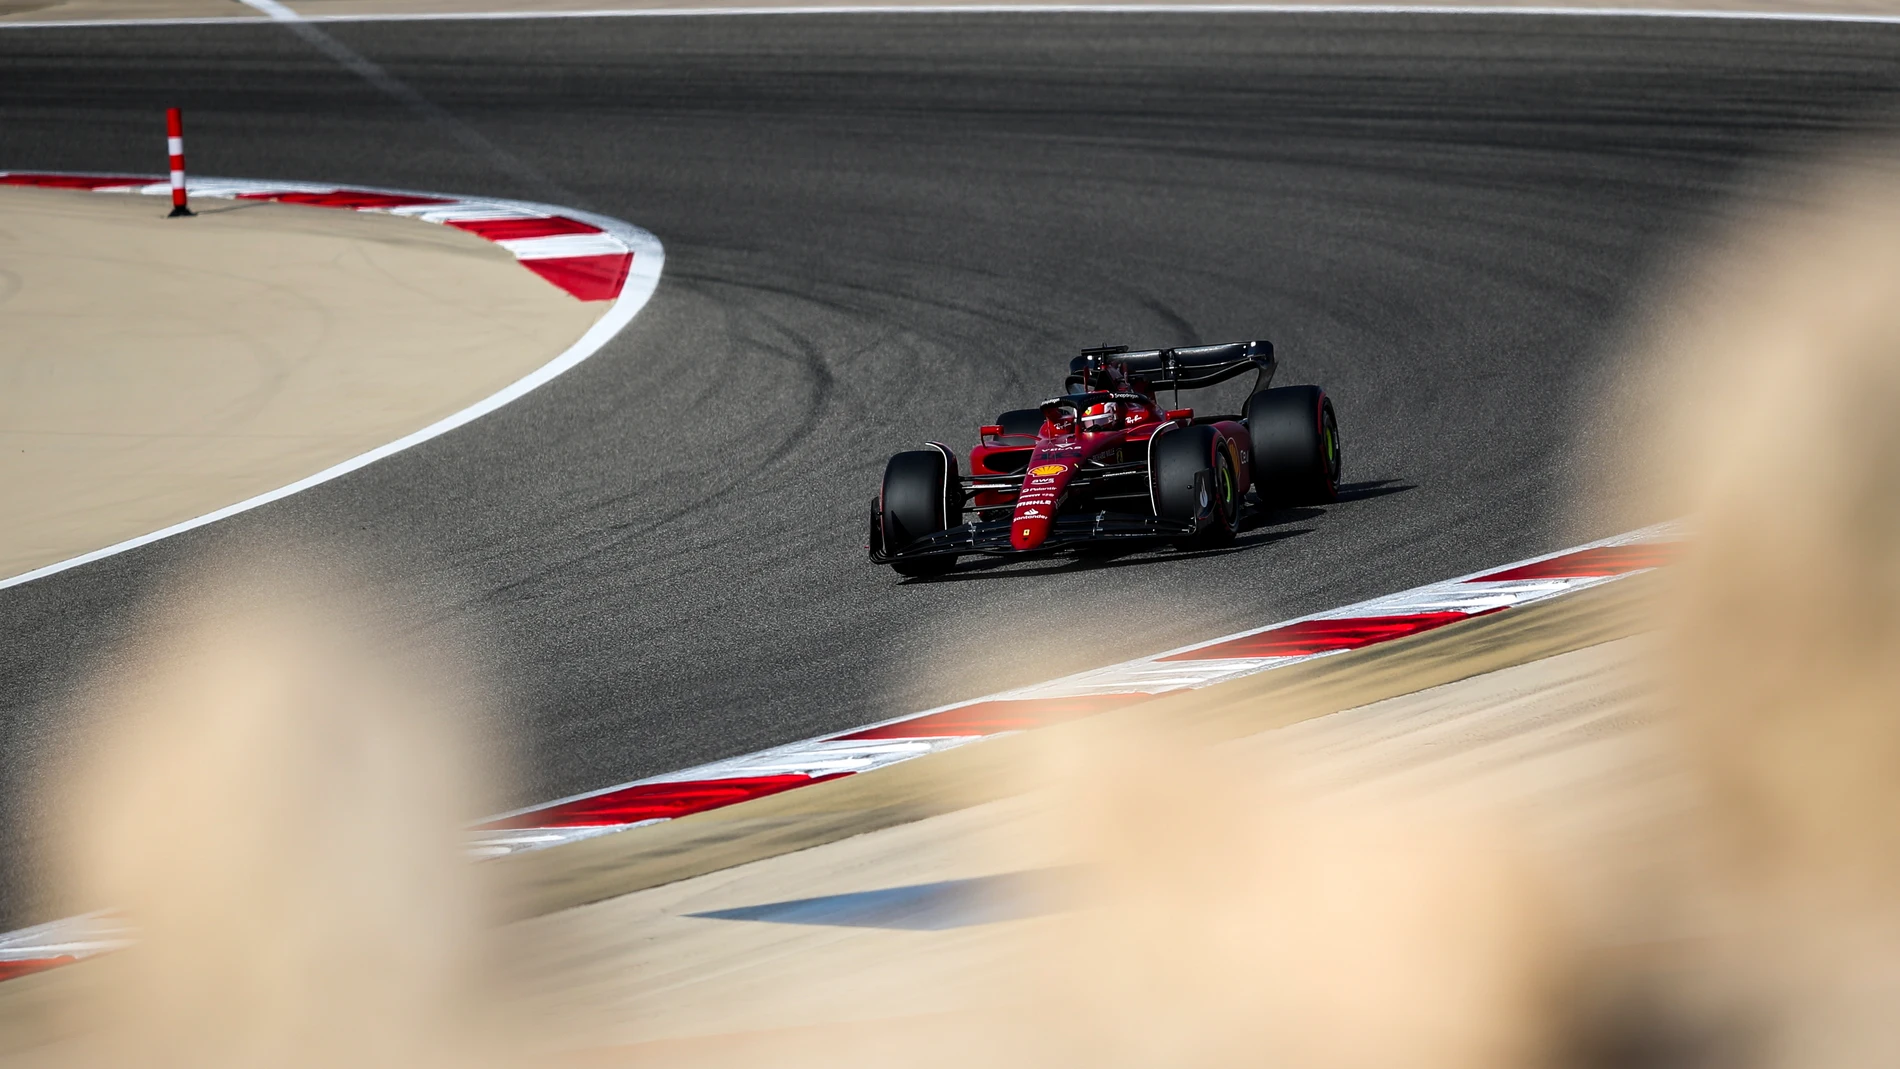 Leclerc se lleva la primera pole del año en Baréin, Sainz 3º y Alonso 8º